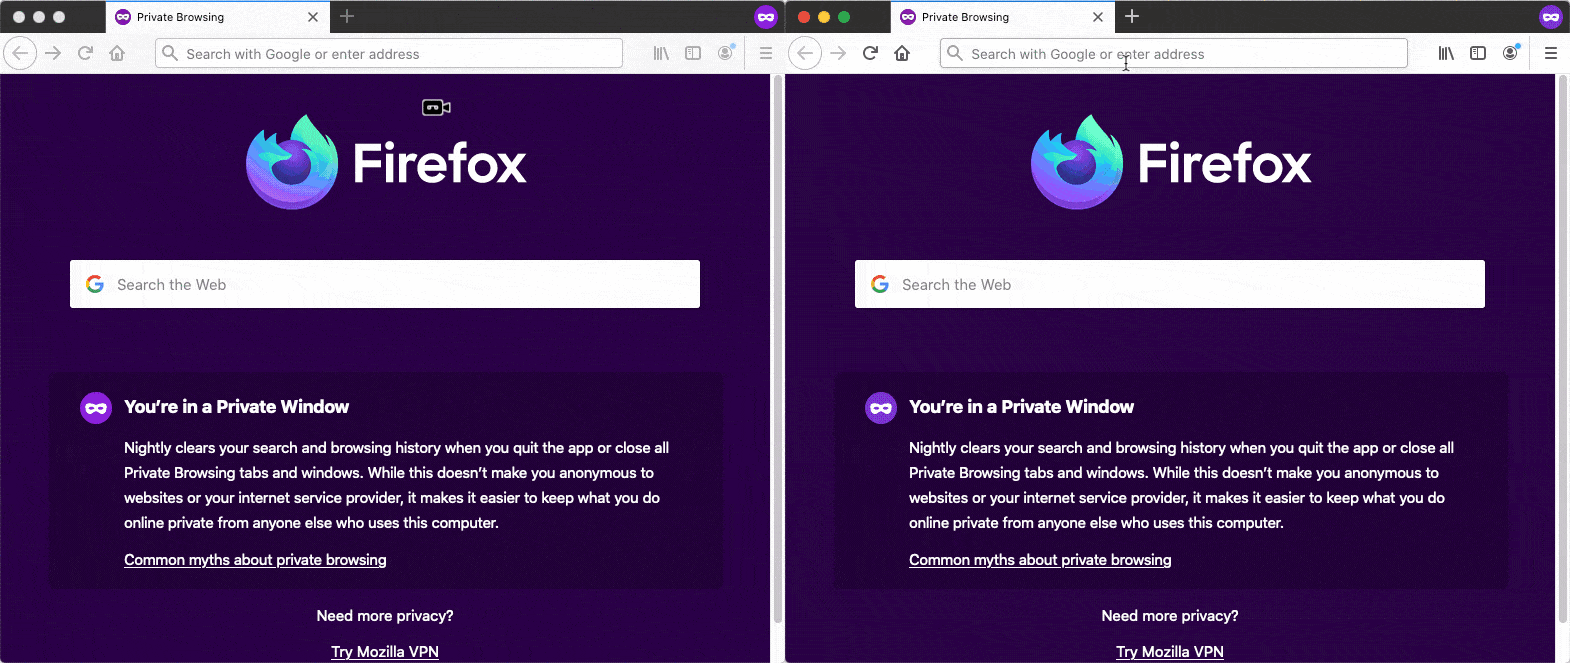 Firefox 87 migliora la privacy con SmartBlock